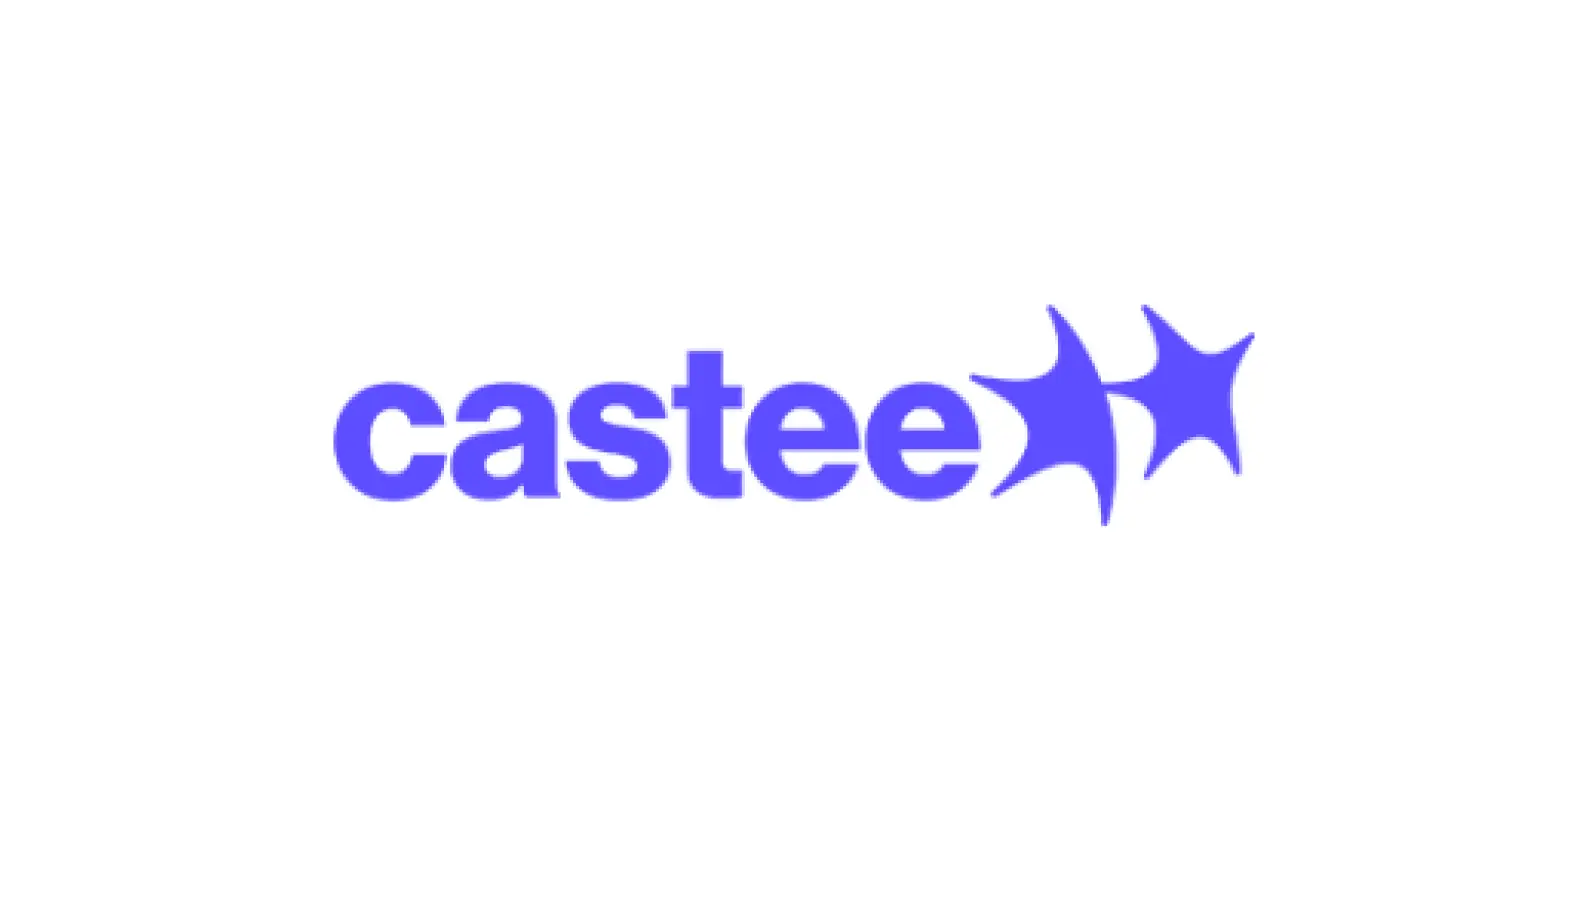 Castee、シード・プレシリーズAで累計約2.5億円を調達　日本初のソーシャルコラボレーションサービス「Castee」β版 提供開始への画像